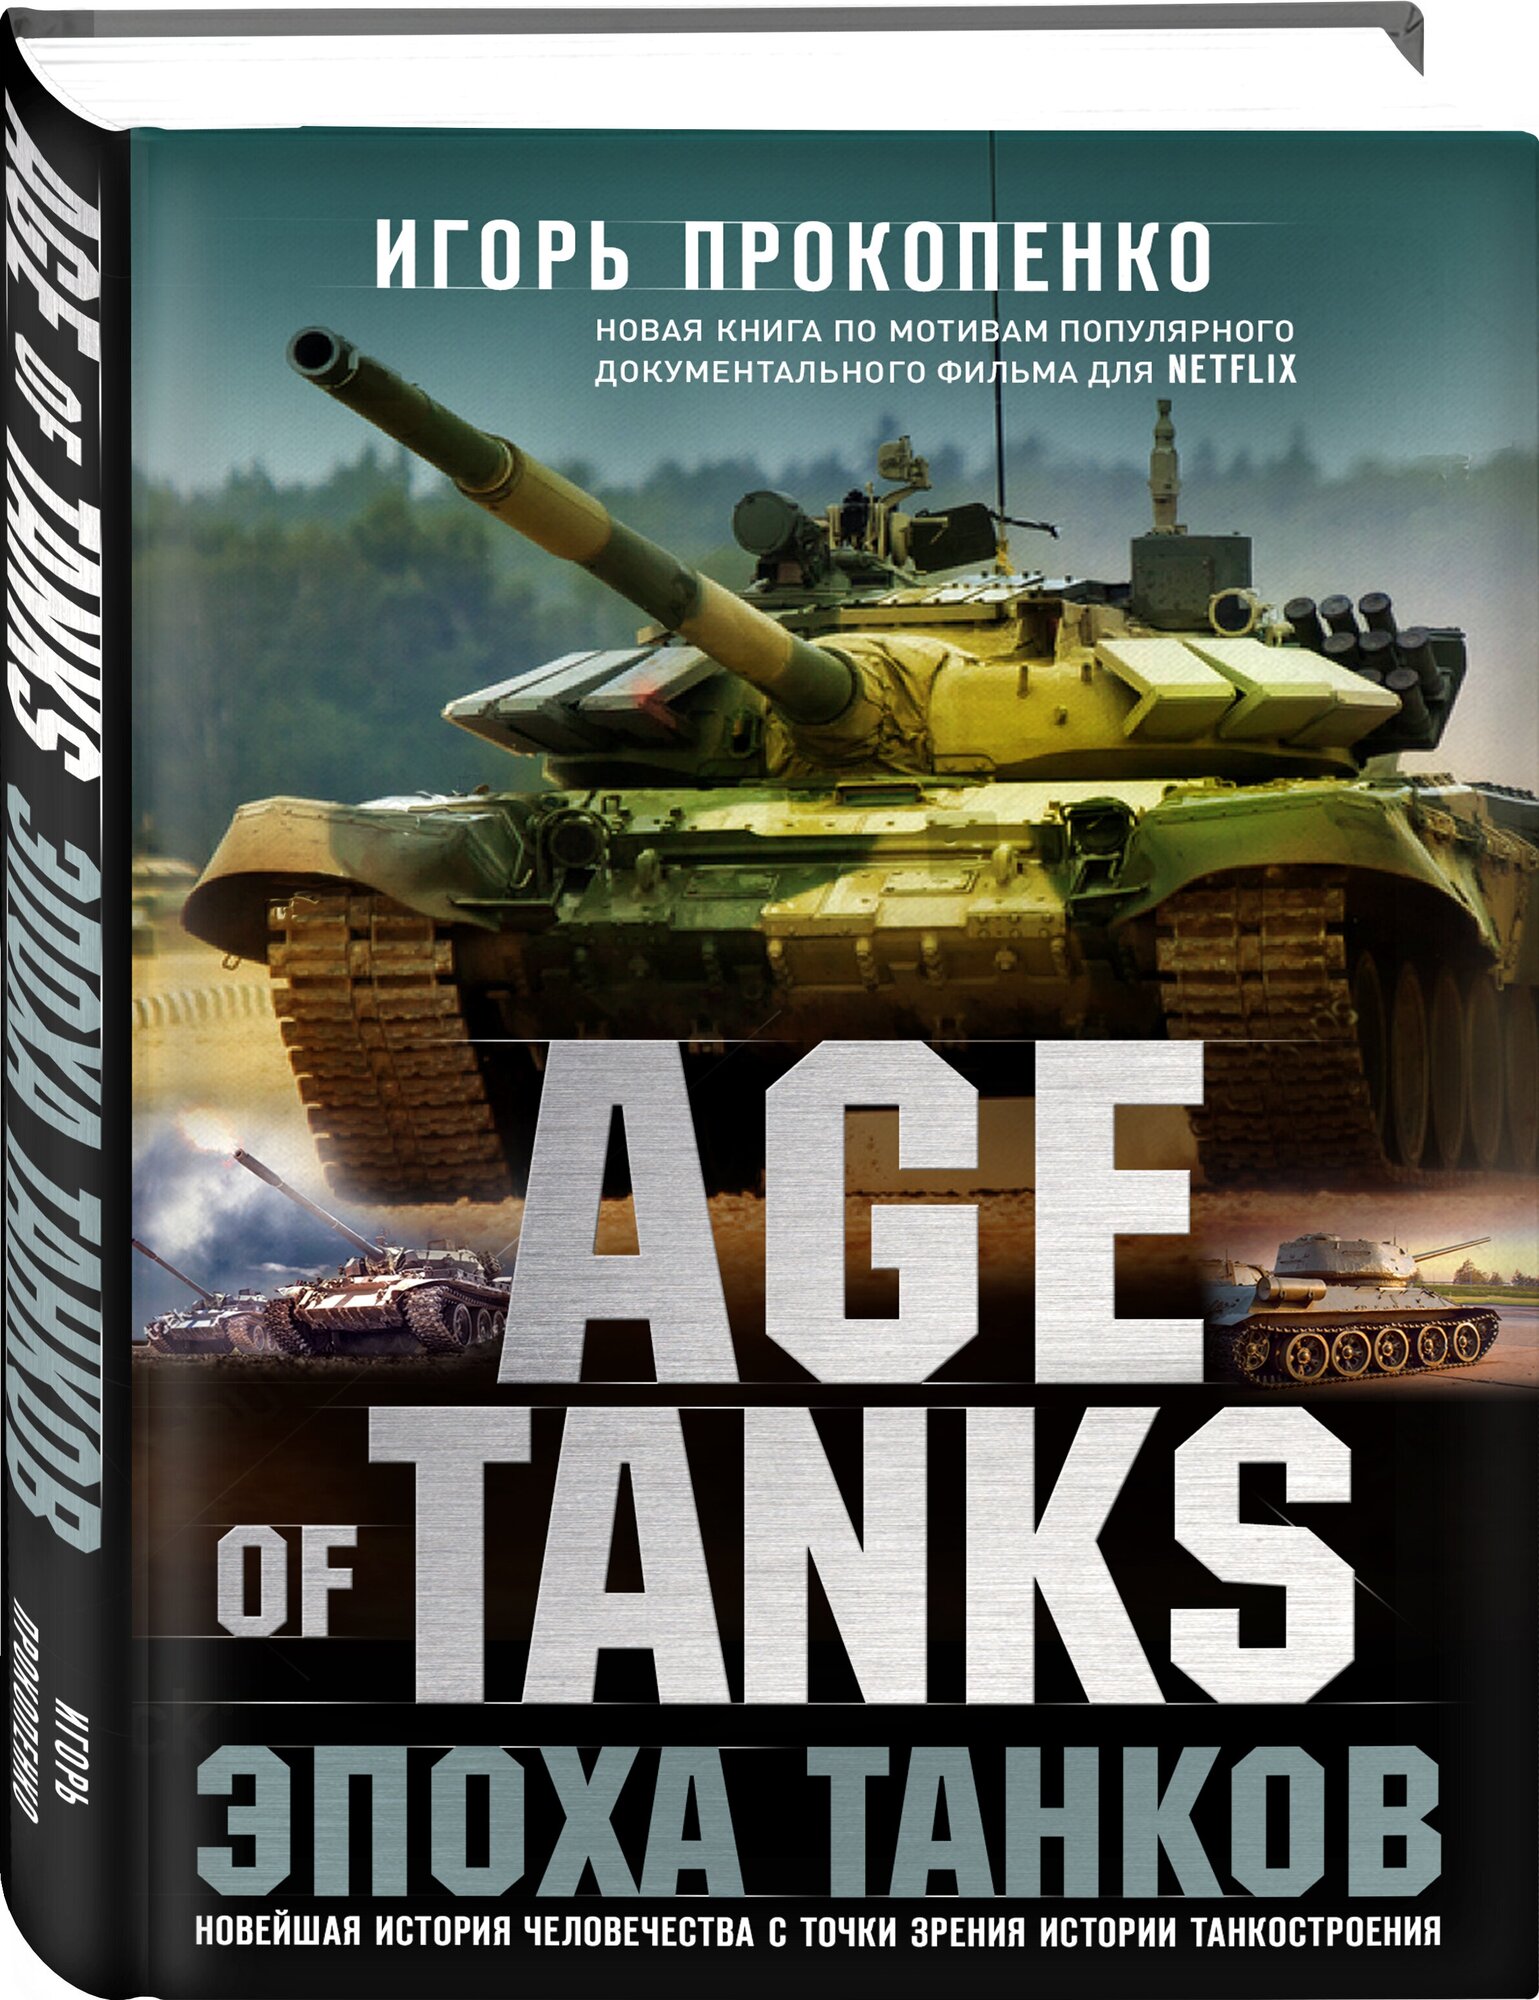 Прокопенко И. С. Age of Tanks. Эпоха танков